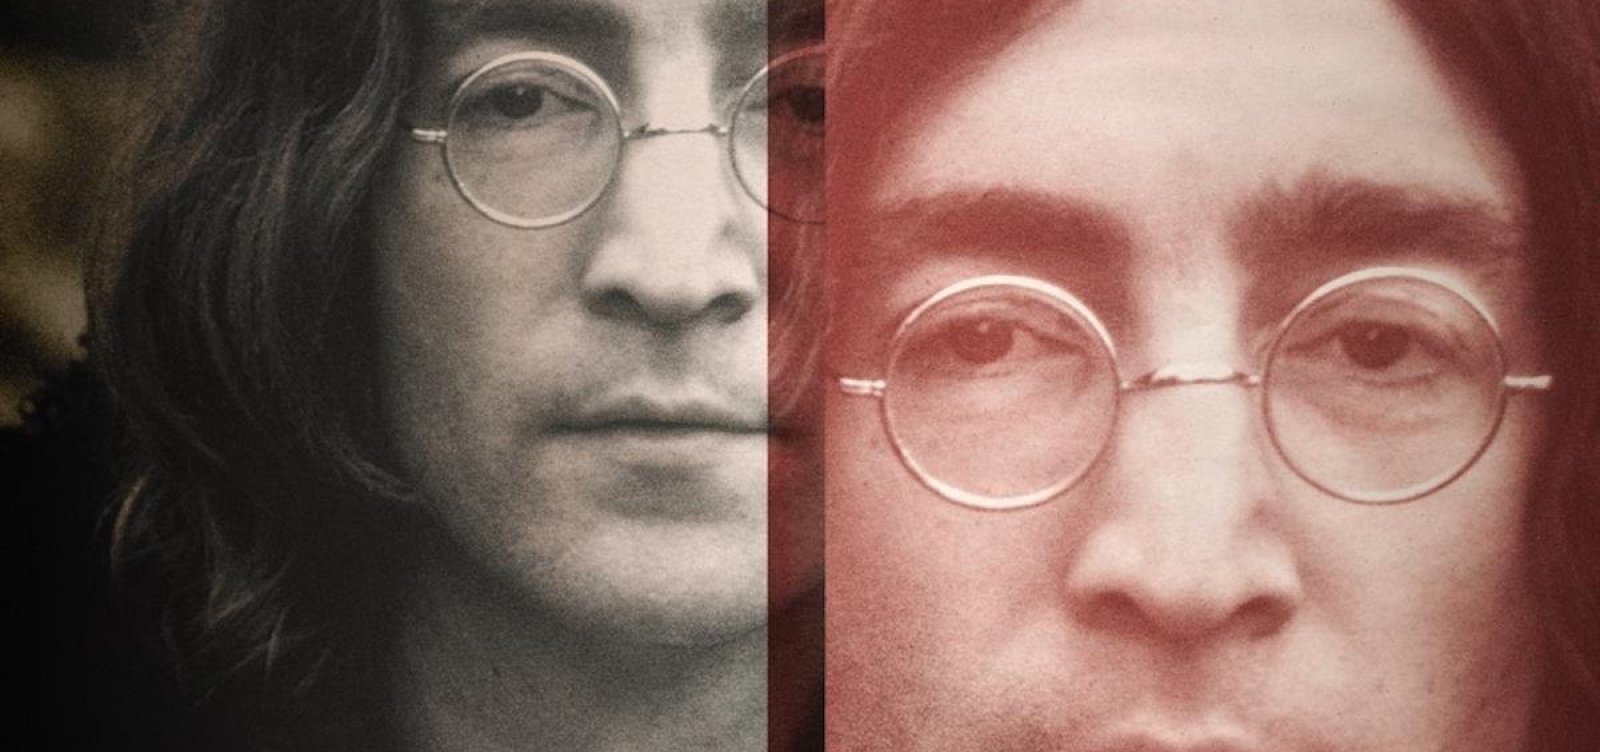 Série documental sobre o assassinato de John Lennon ganha trailer